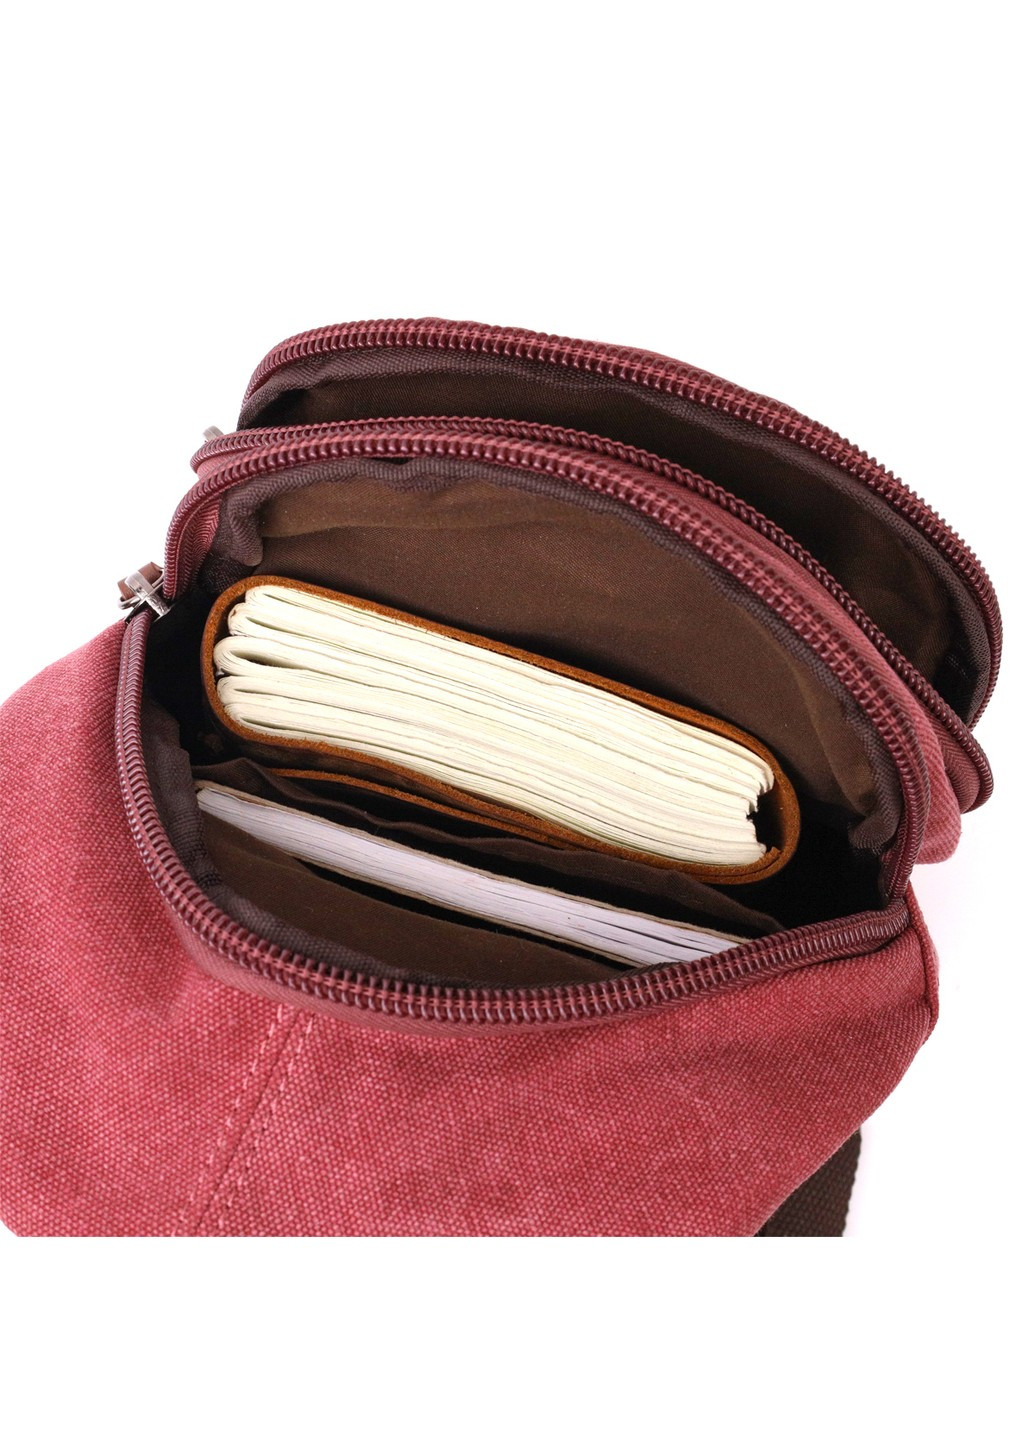 Мужская стильная сумка через плечо с уплотненной спинкой Vintagе 22175 Бордовый Vintage (267932151)